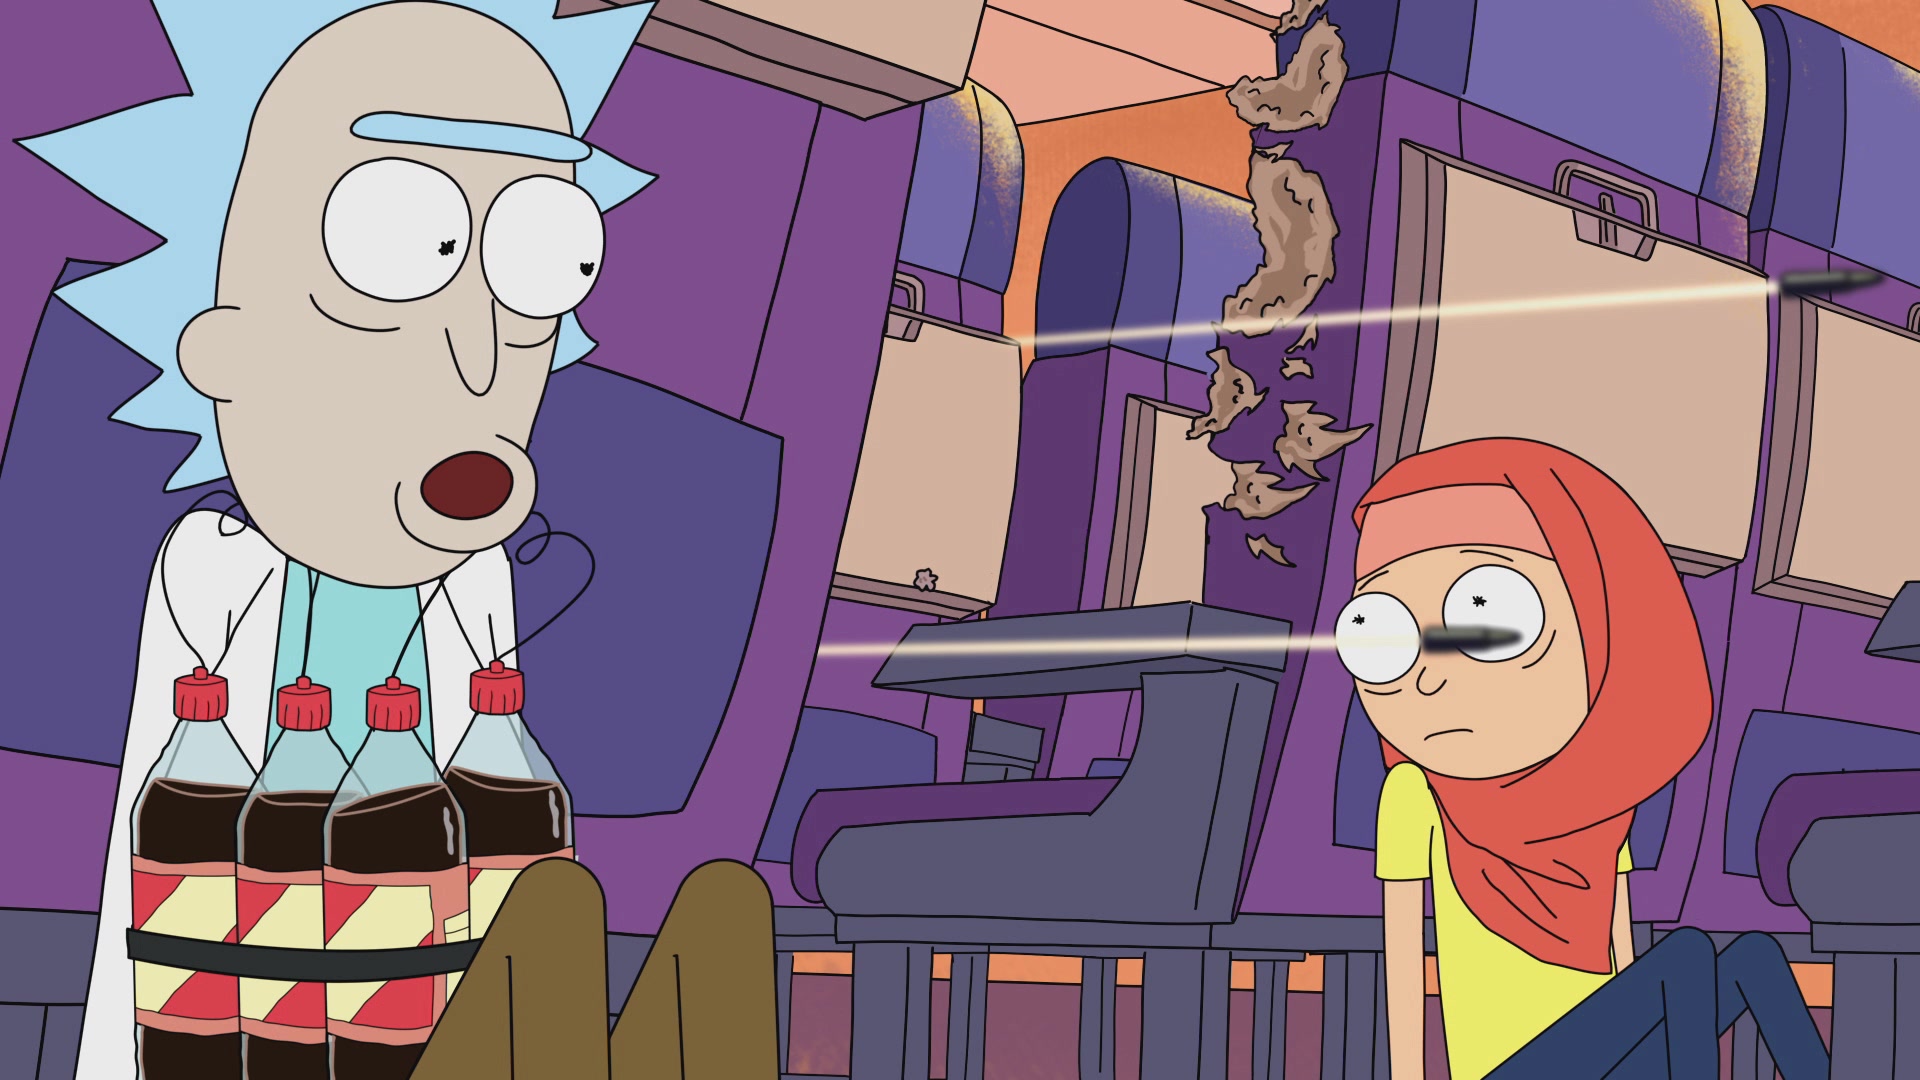 Rick And Morty Season 1 Image Fancaps